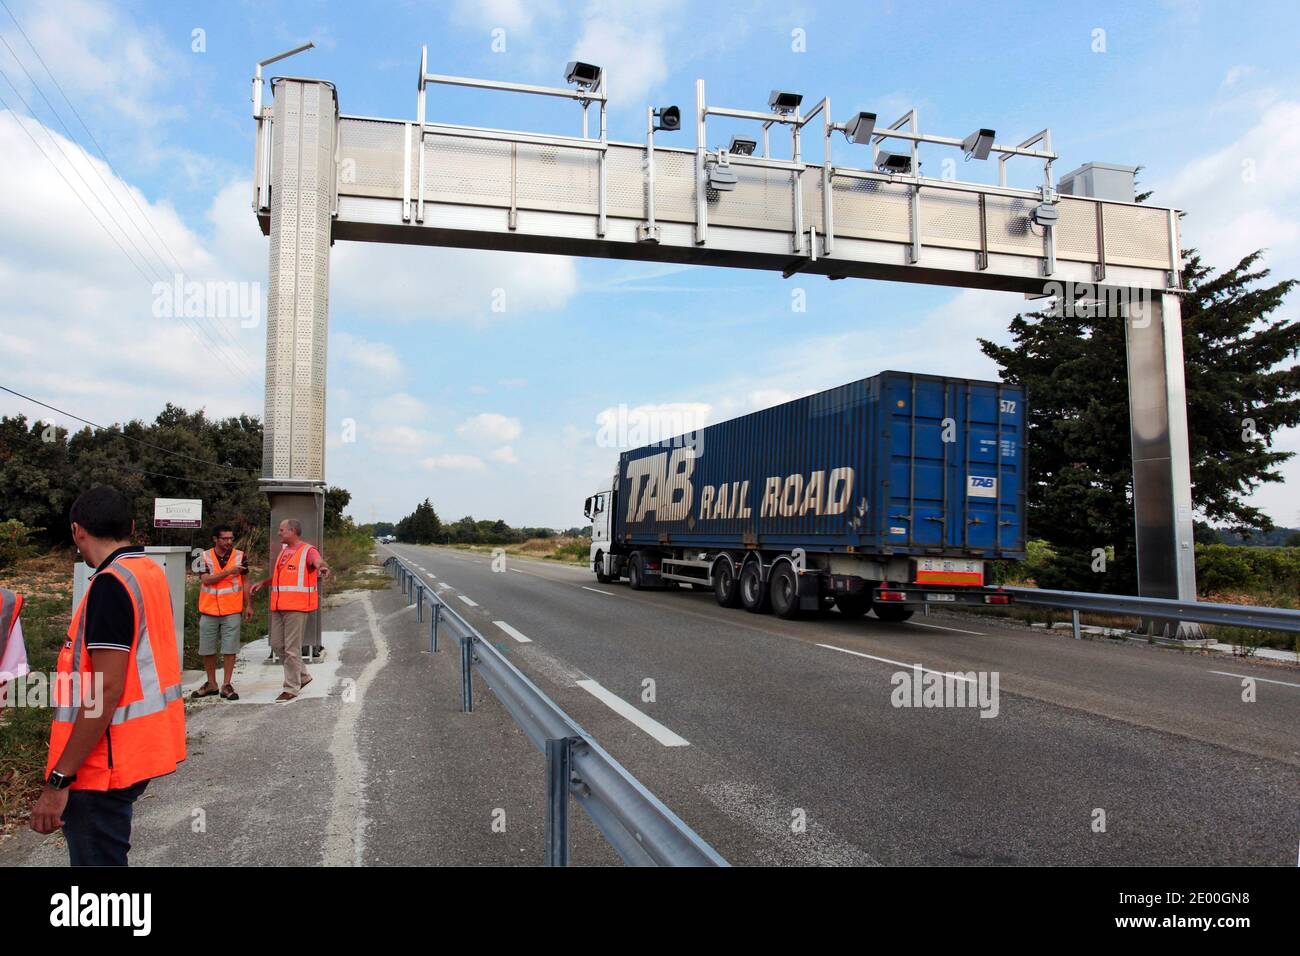 Les camions passent sous un portique électronique écotaxe sur la route  RD6100 dans le sud de la France le 26 septembre 2013. En vertu du régime  écotaxe, tous les véhicules lourds de